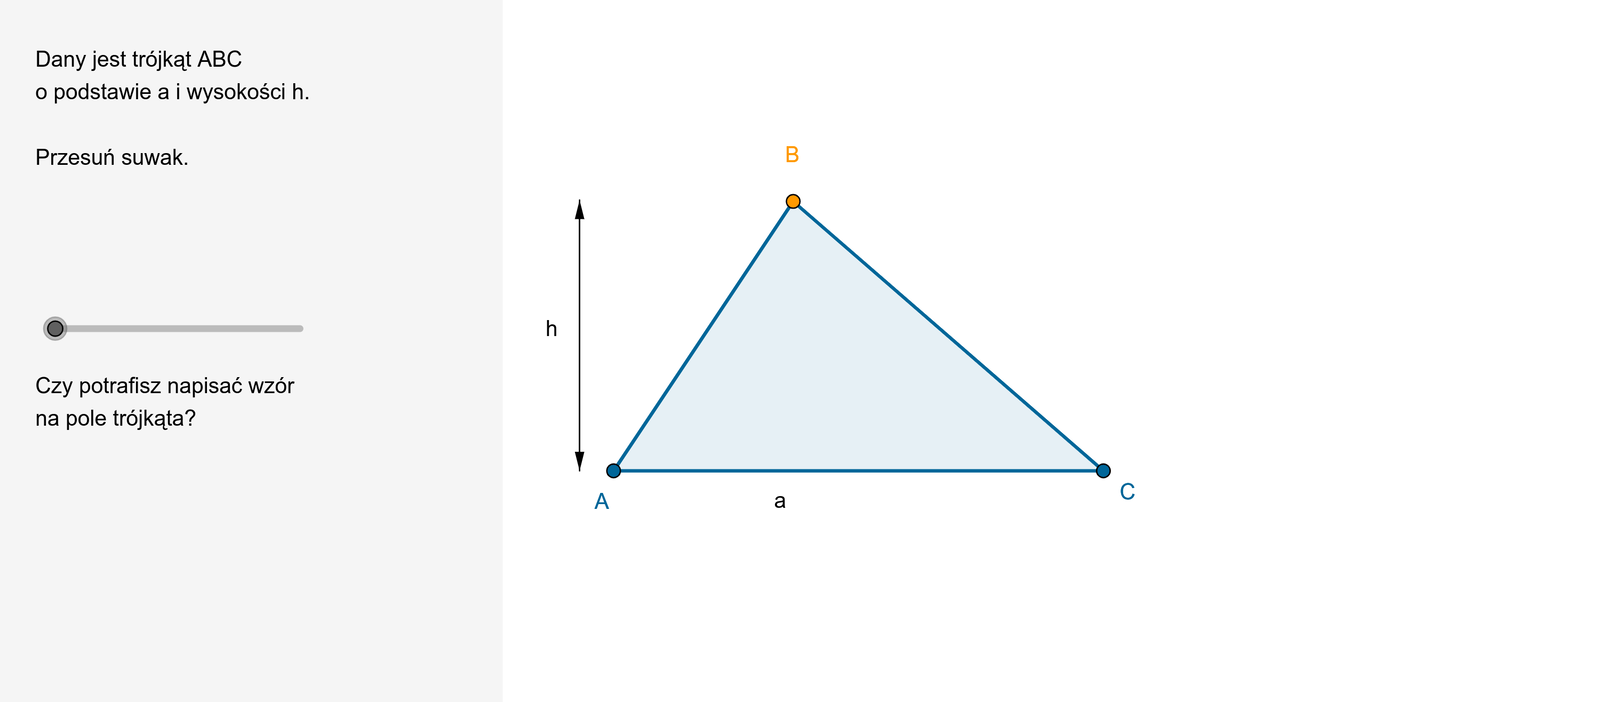 Animacja pokazuje przekształcenie trójkąta A B C o podstawie a i wysokości h, w prostokąt A B D E o bokach a i h. Zauważamy, że pole trójkąta to połowa pola prostokąta o bokach a i h.